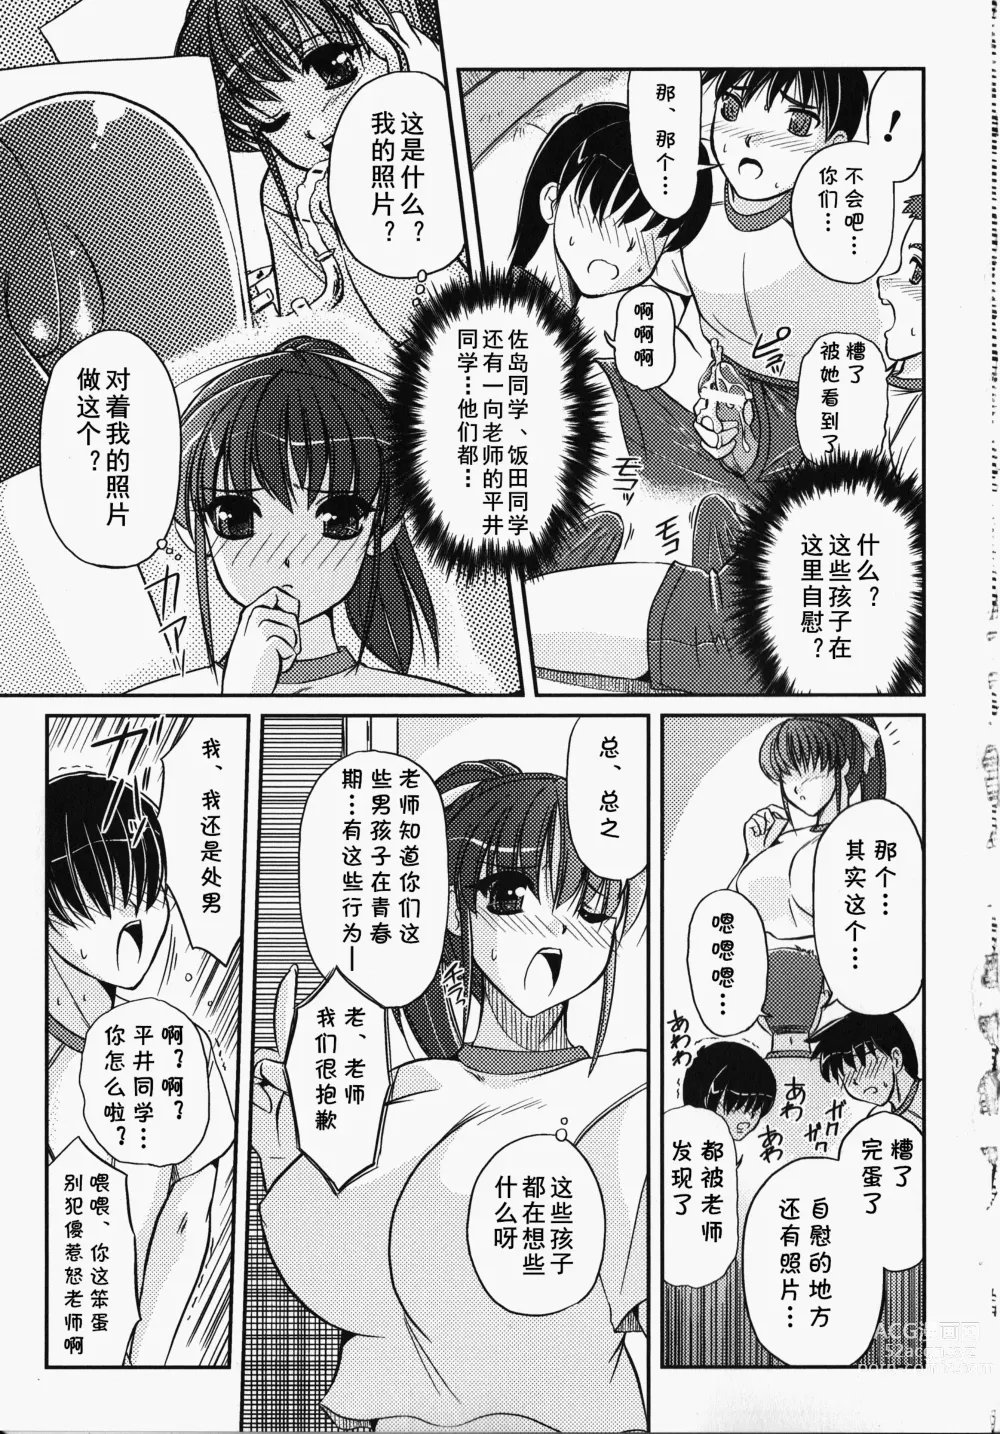 Page 2 of manga Bokura no Sensei  to  Himitsu  Jisshuu